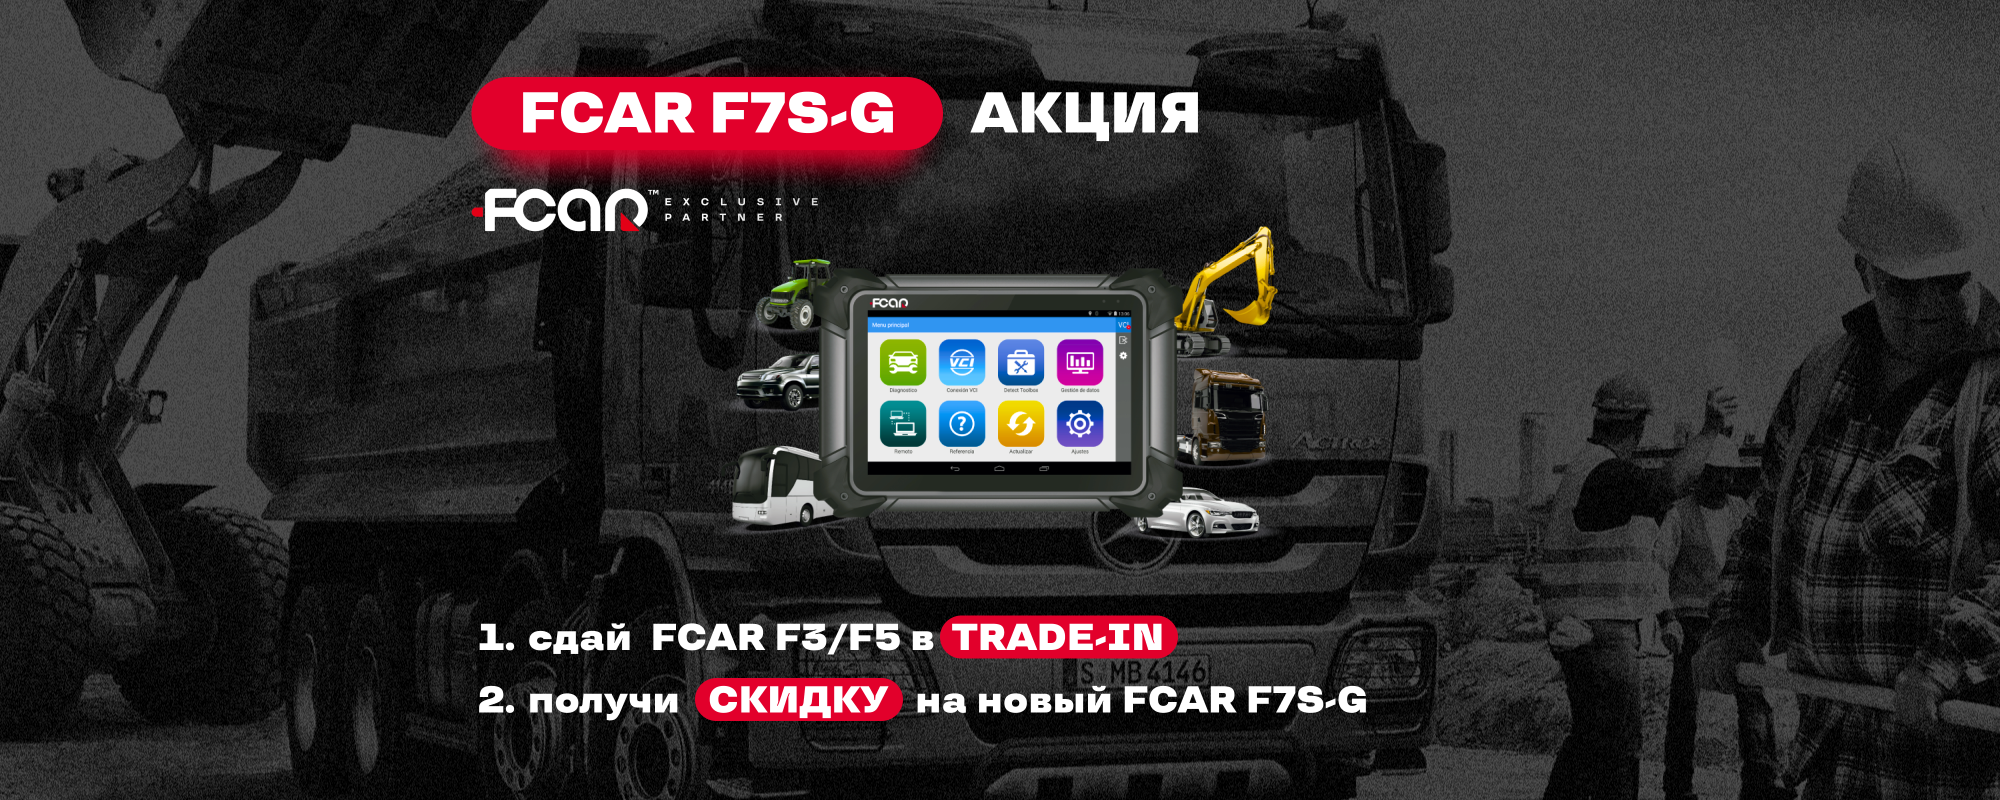   FCAR F7S-G